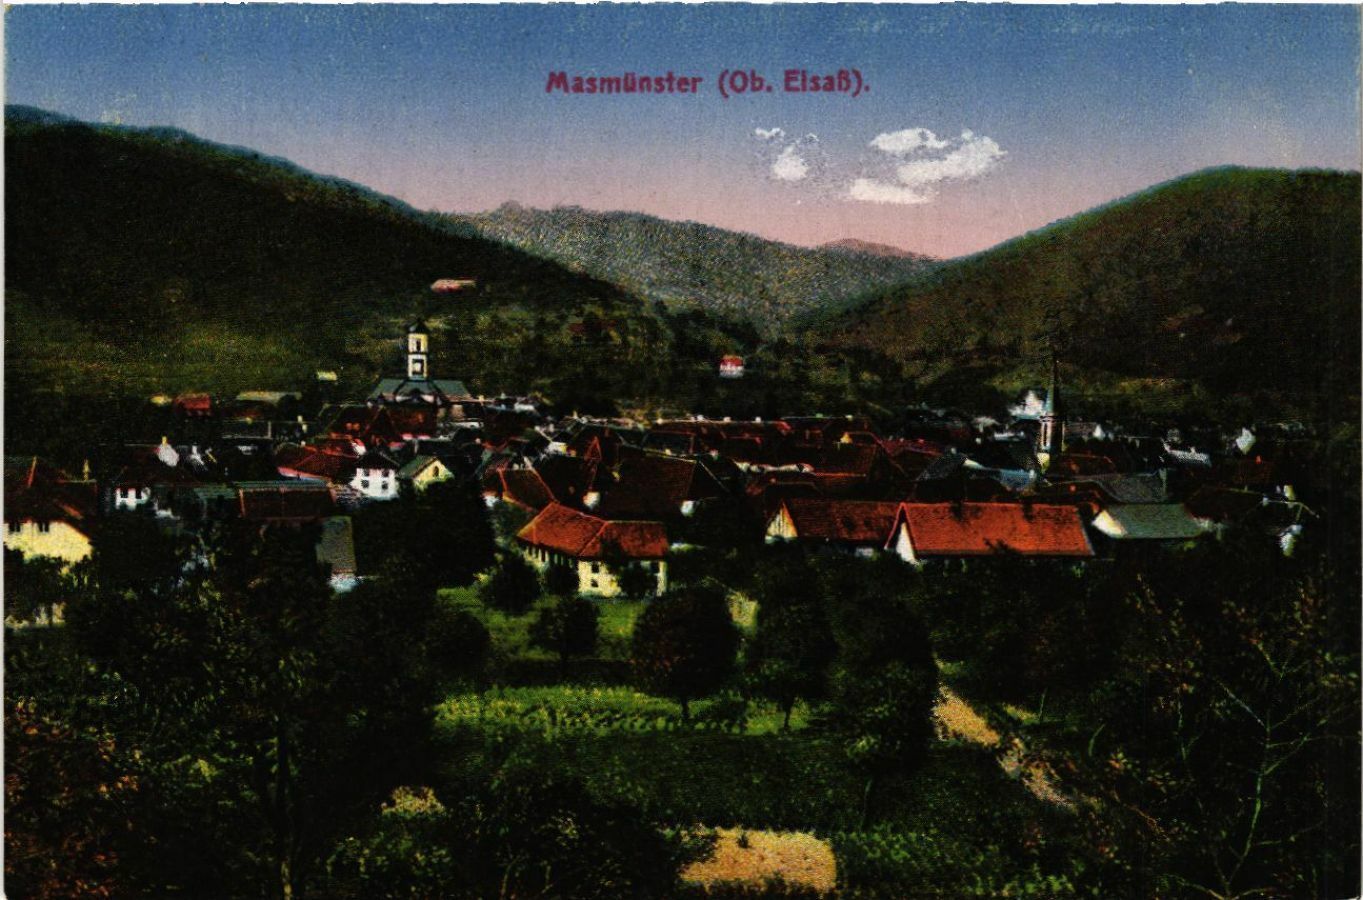 276-munster-masevaux-masmunster-panorama